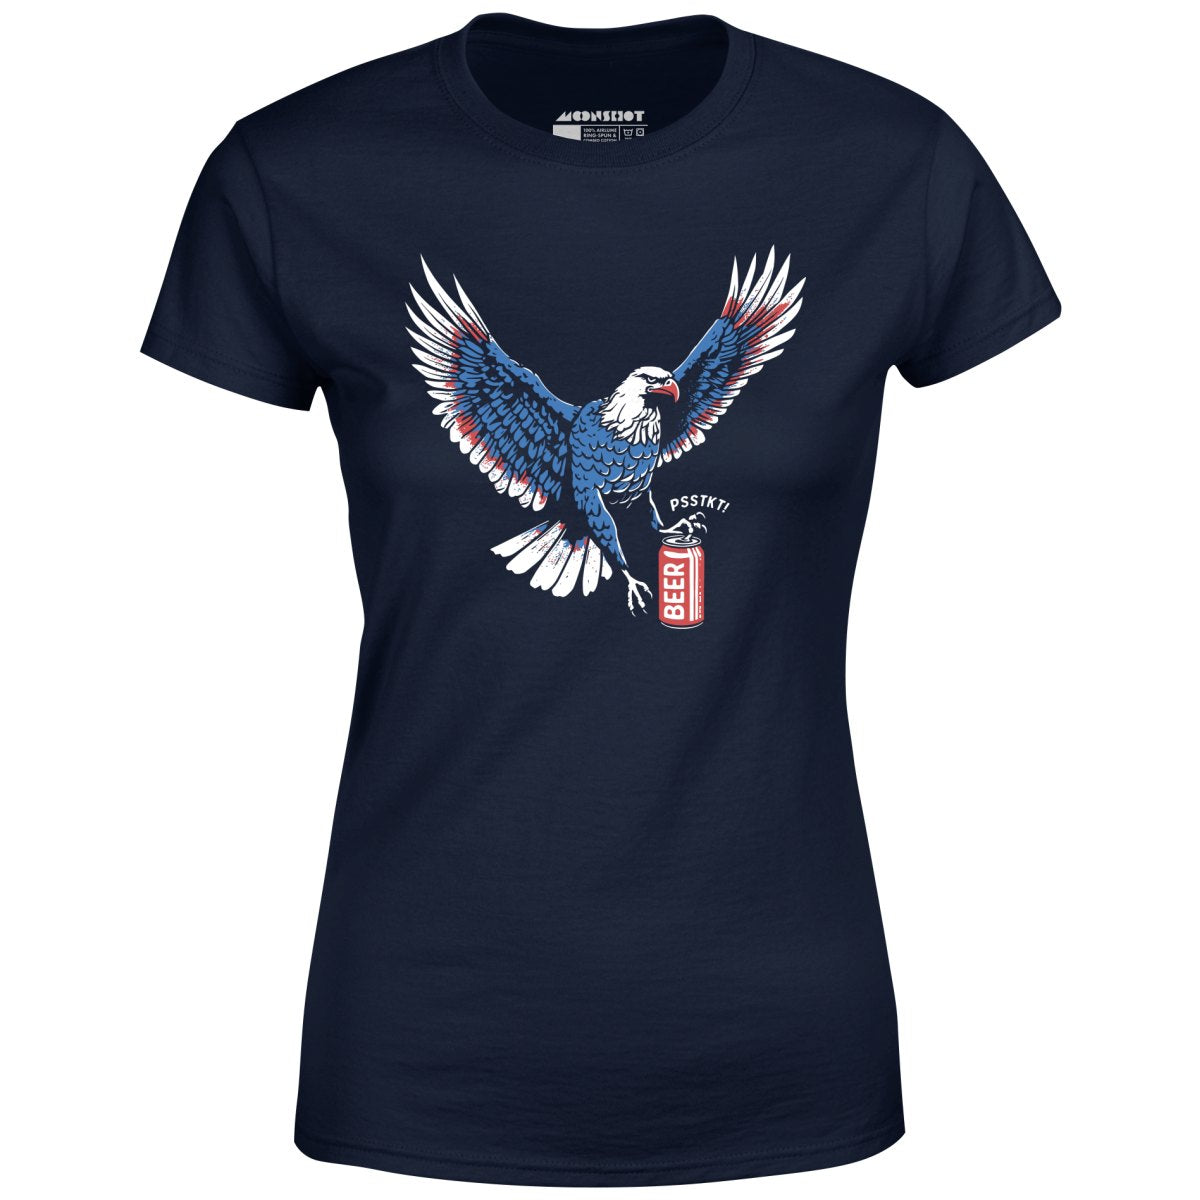 Psstkt Eagle - Women's T-Shirt